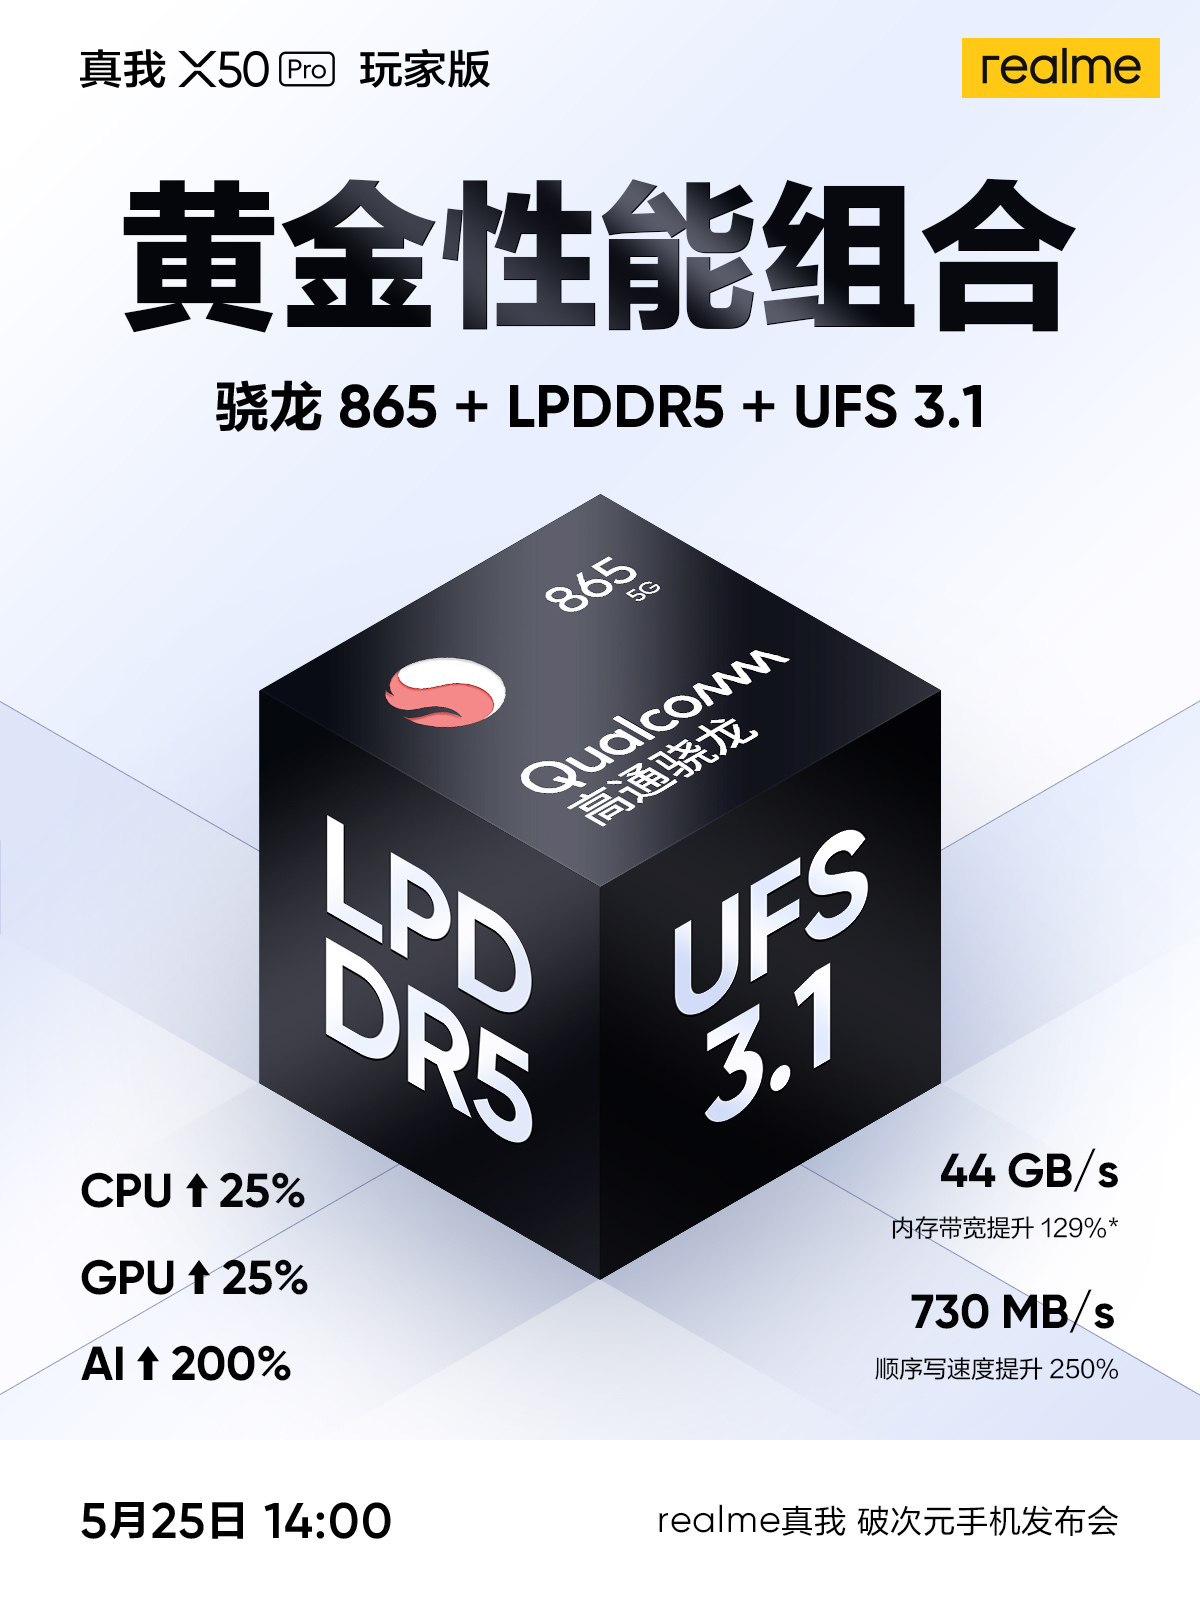 Realme X50 Pro Player Edition UFS 3.1 LPDDR5